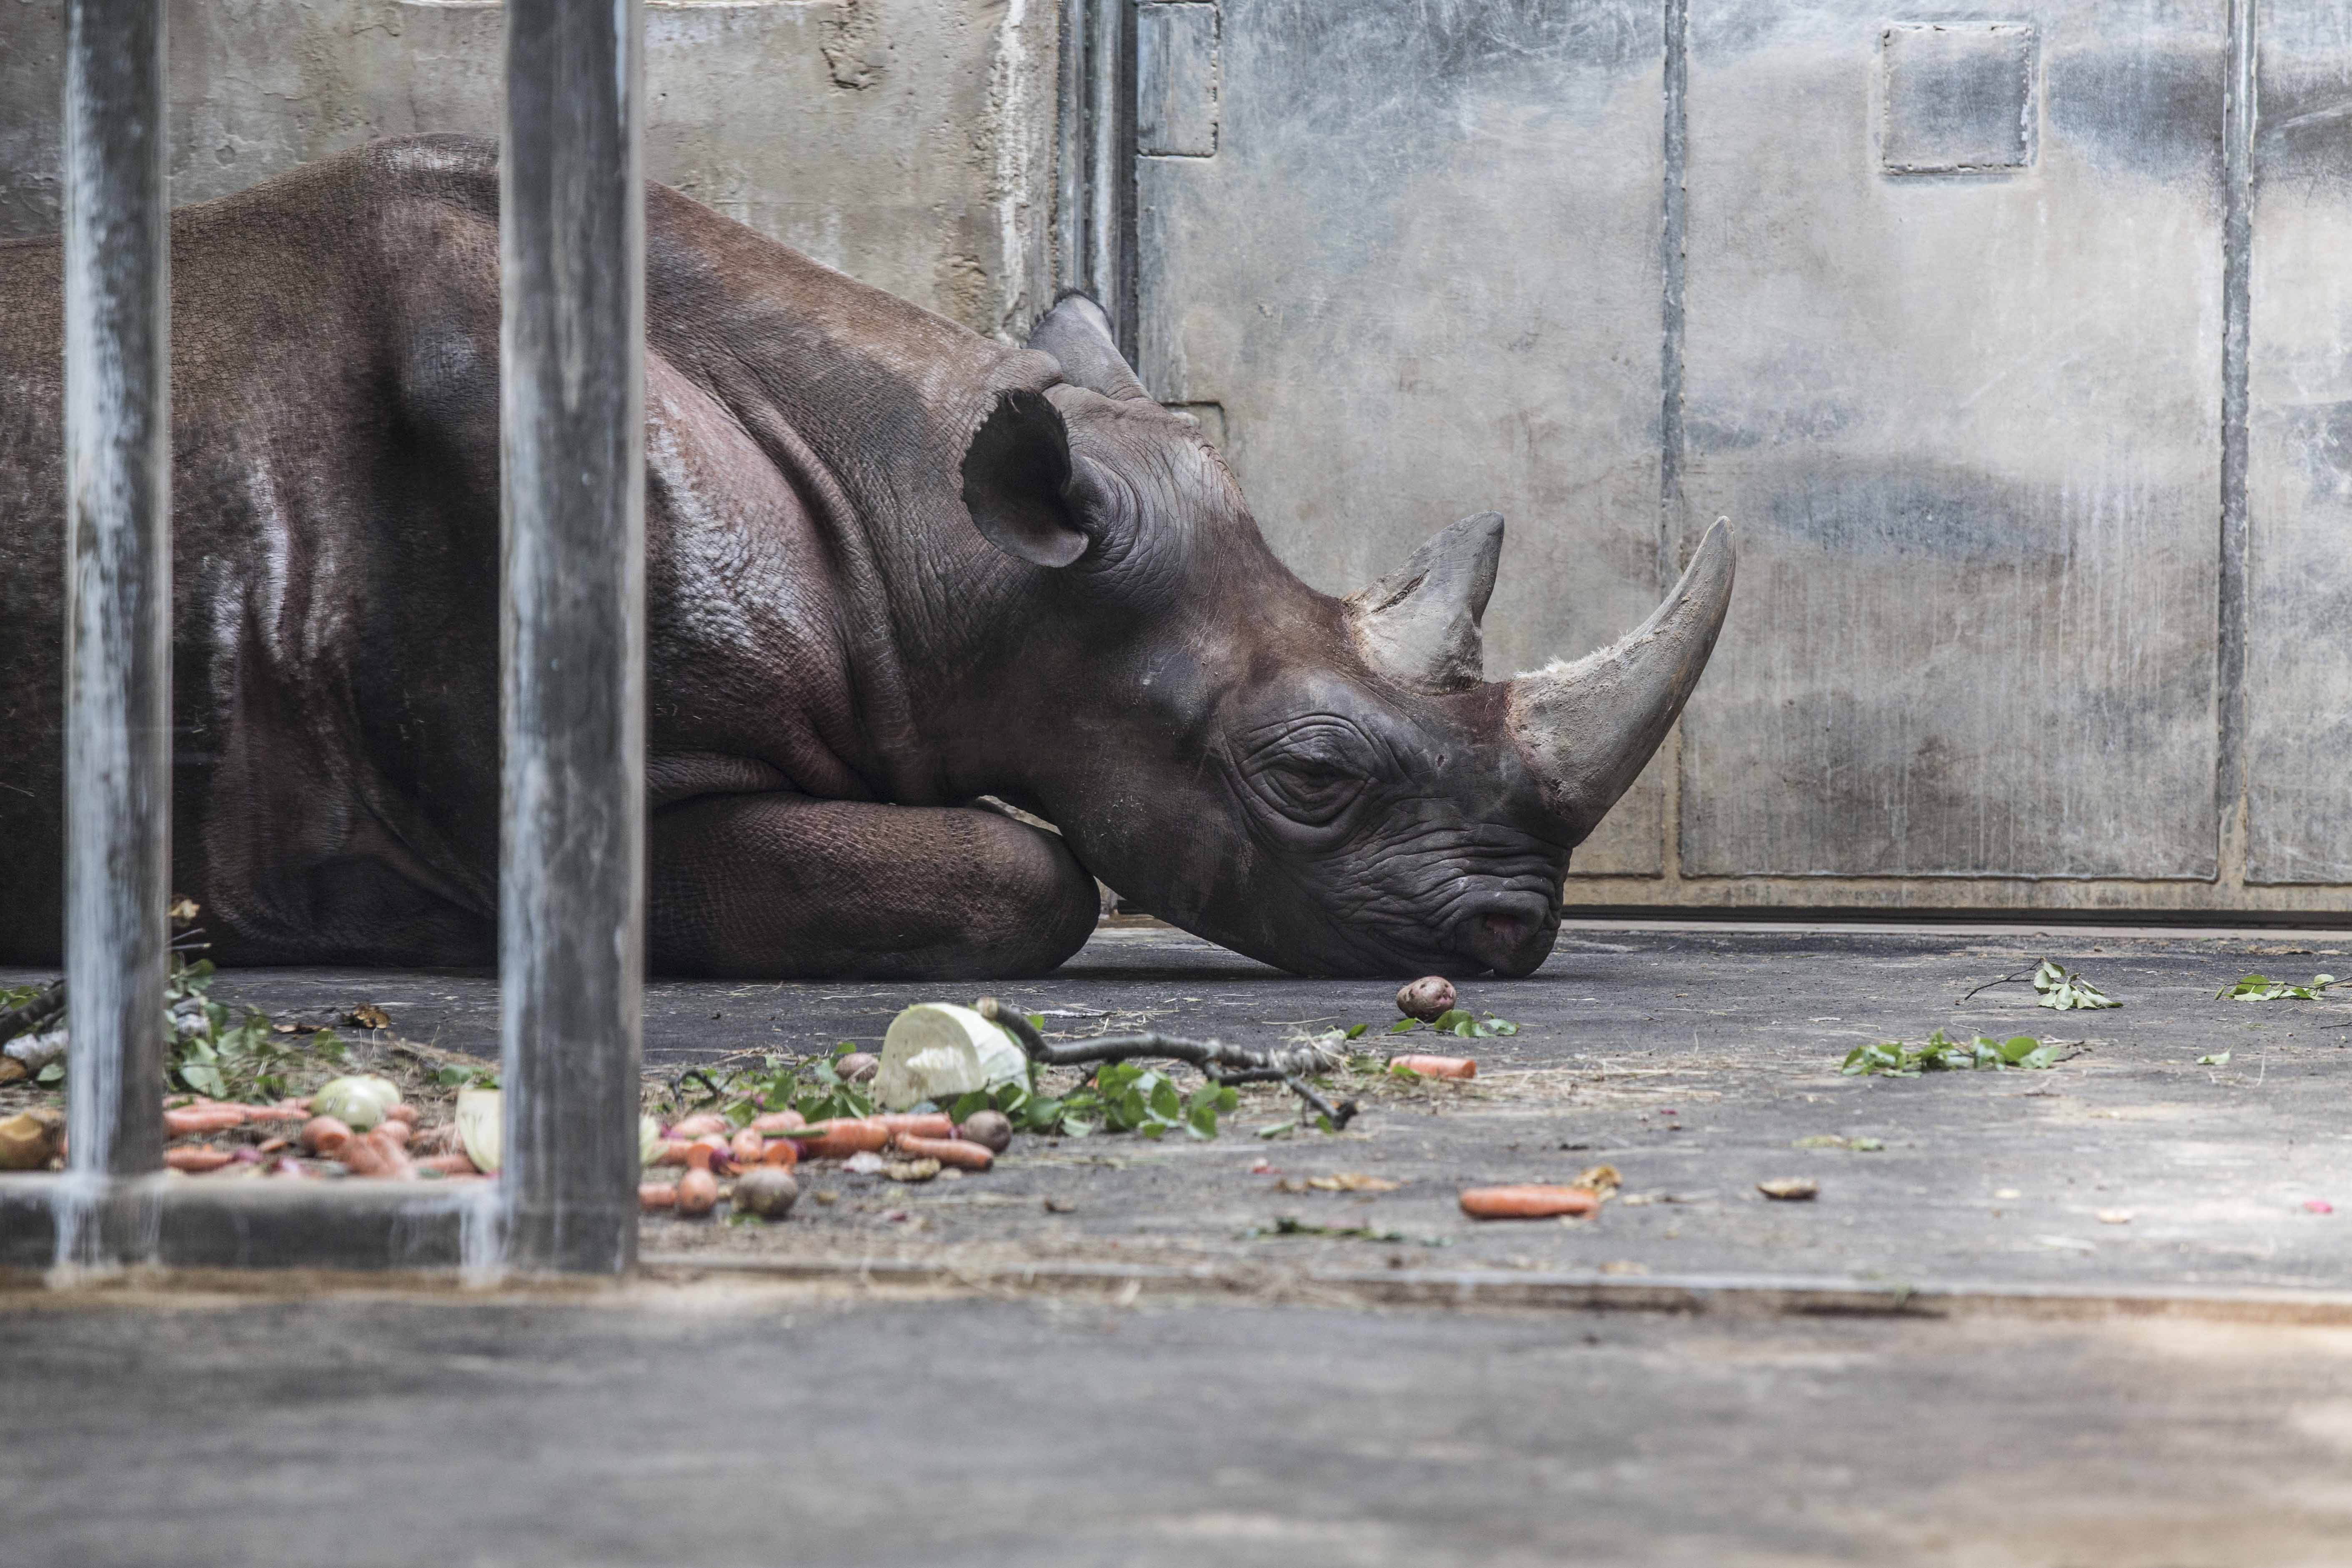 A rhinoceros. By: Argo Argel